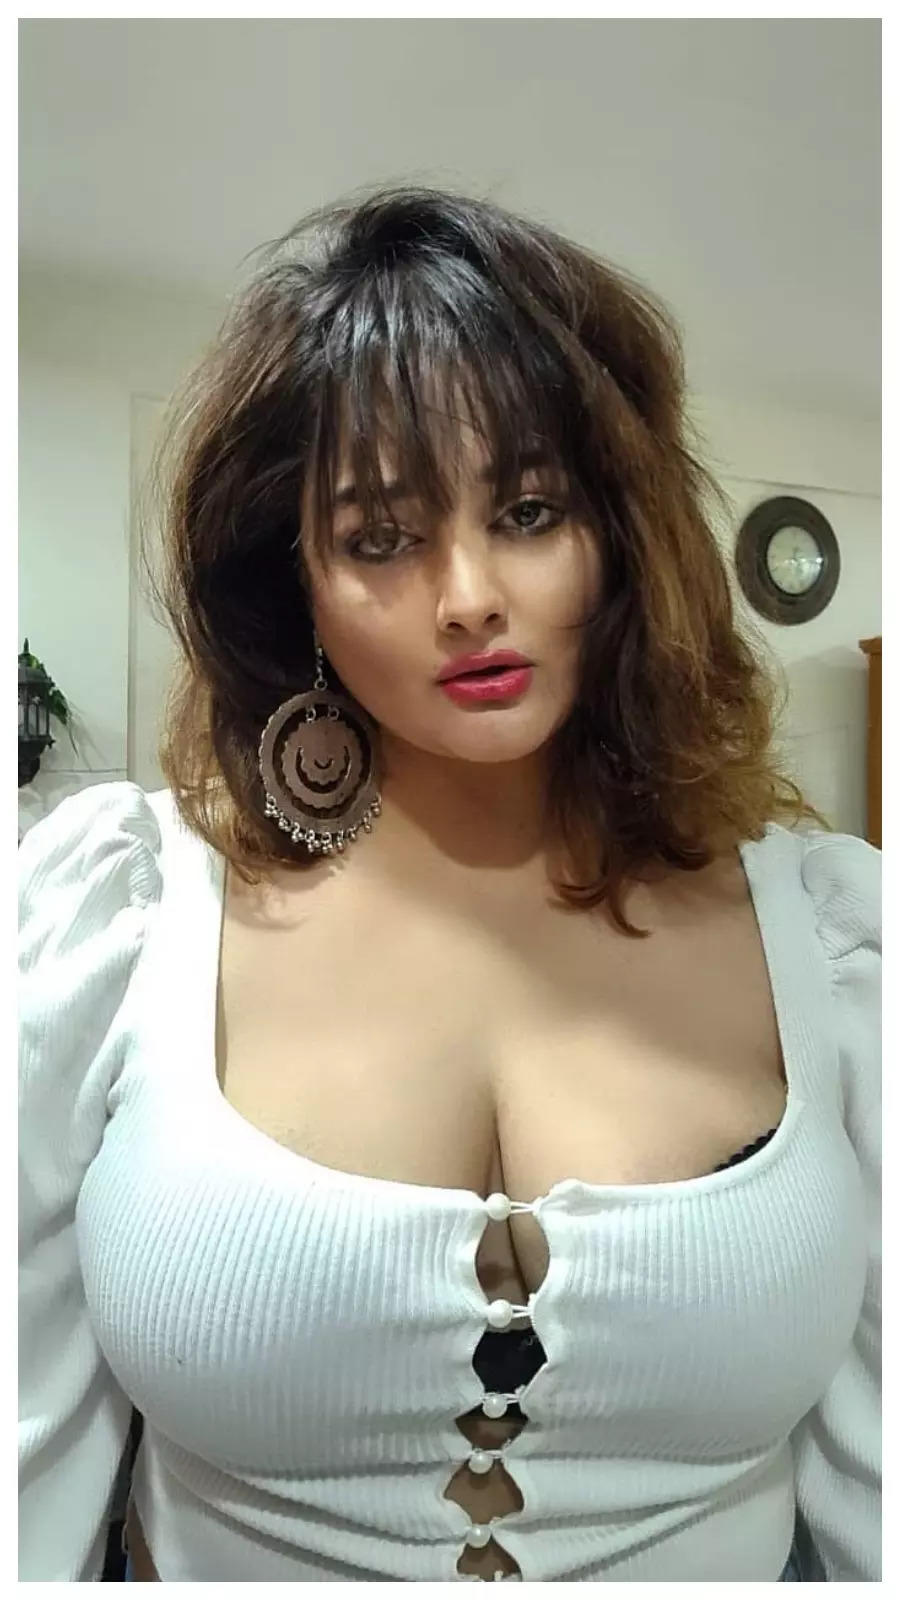 Actress Kiran Rathod Latest Unseen Hot Photos Are Too